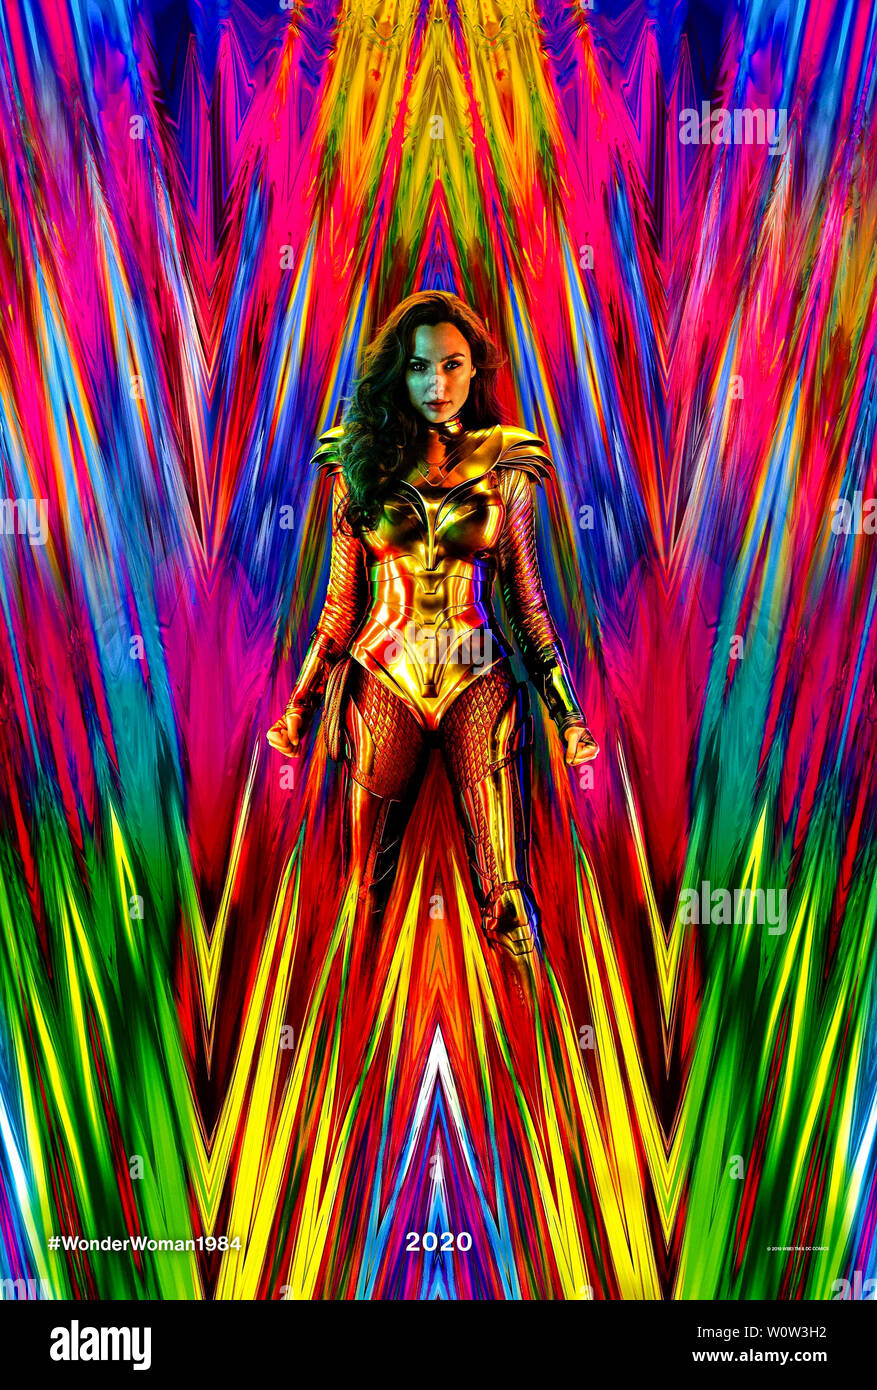 Wonder Woman 1984 (2020) réalisé par Patty Jenkins et avec Gal Gadot, Chris Pine, Connie Nielsen et Robin Wright. Situé dans les années 80, Wonder Woman prend son ennemi juré le guépard au cours de la guerre froide. Banque D'Images